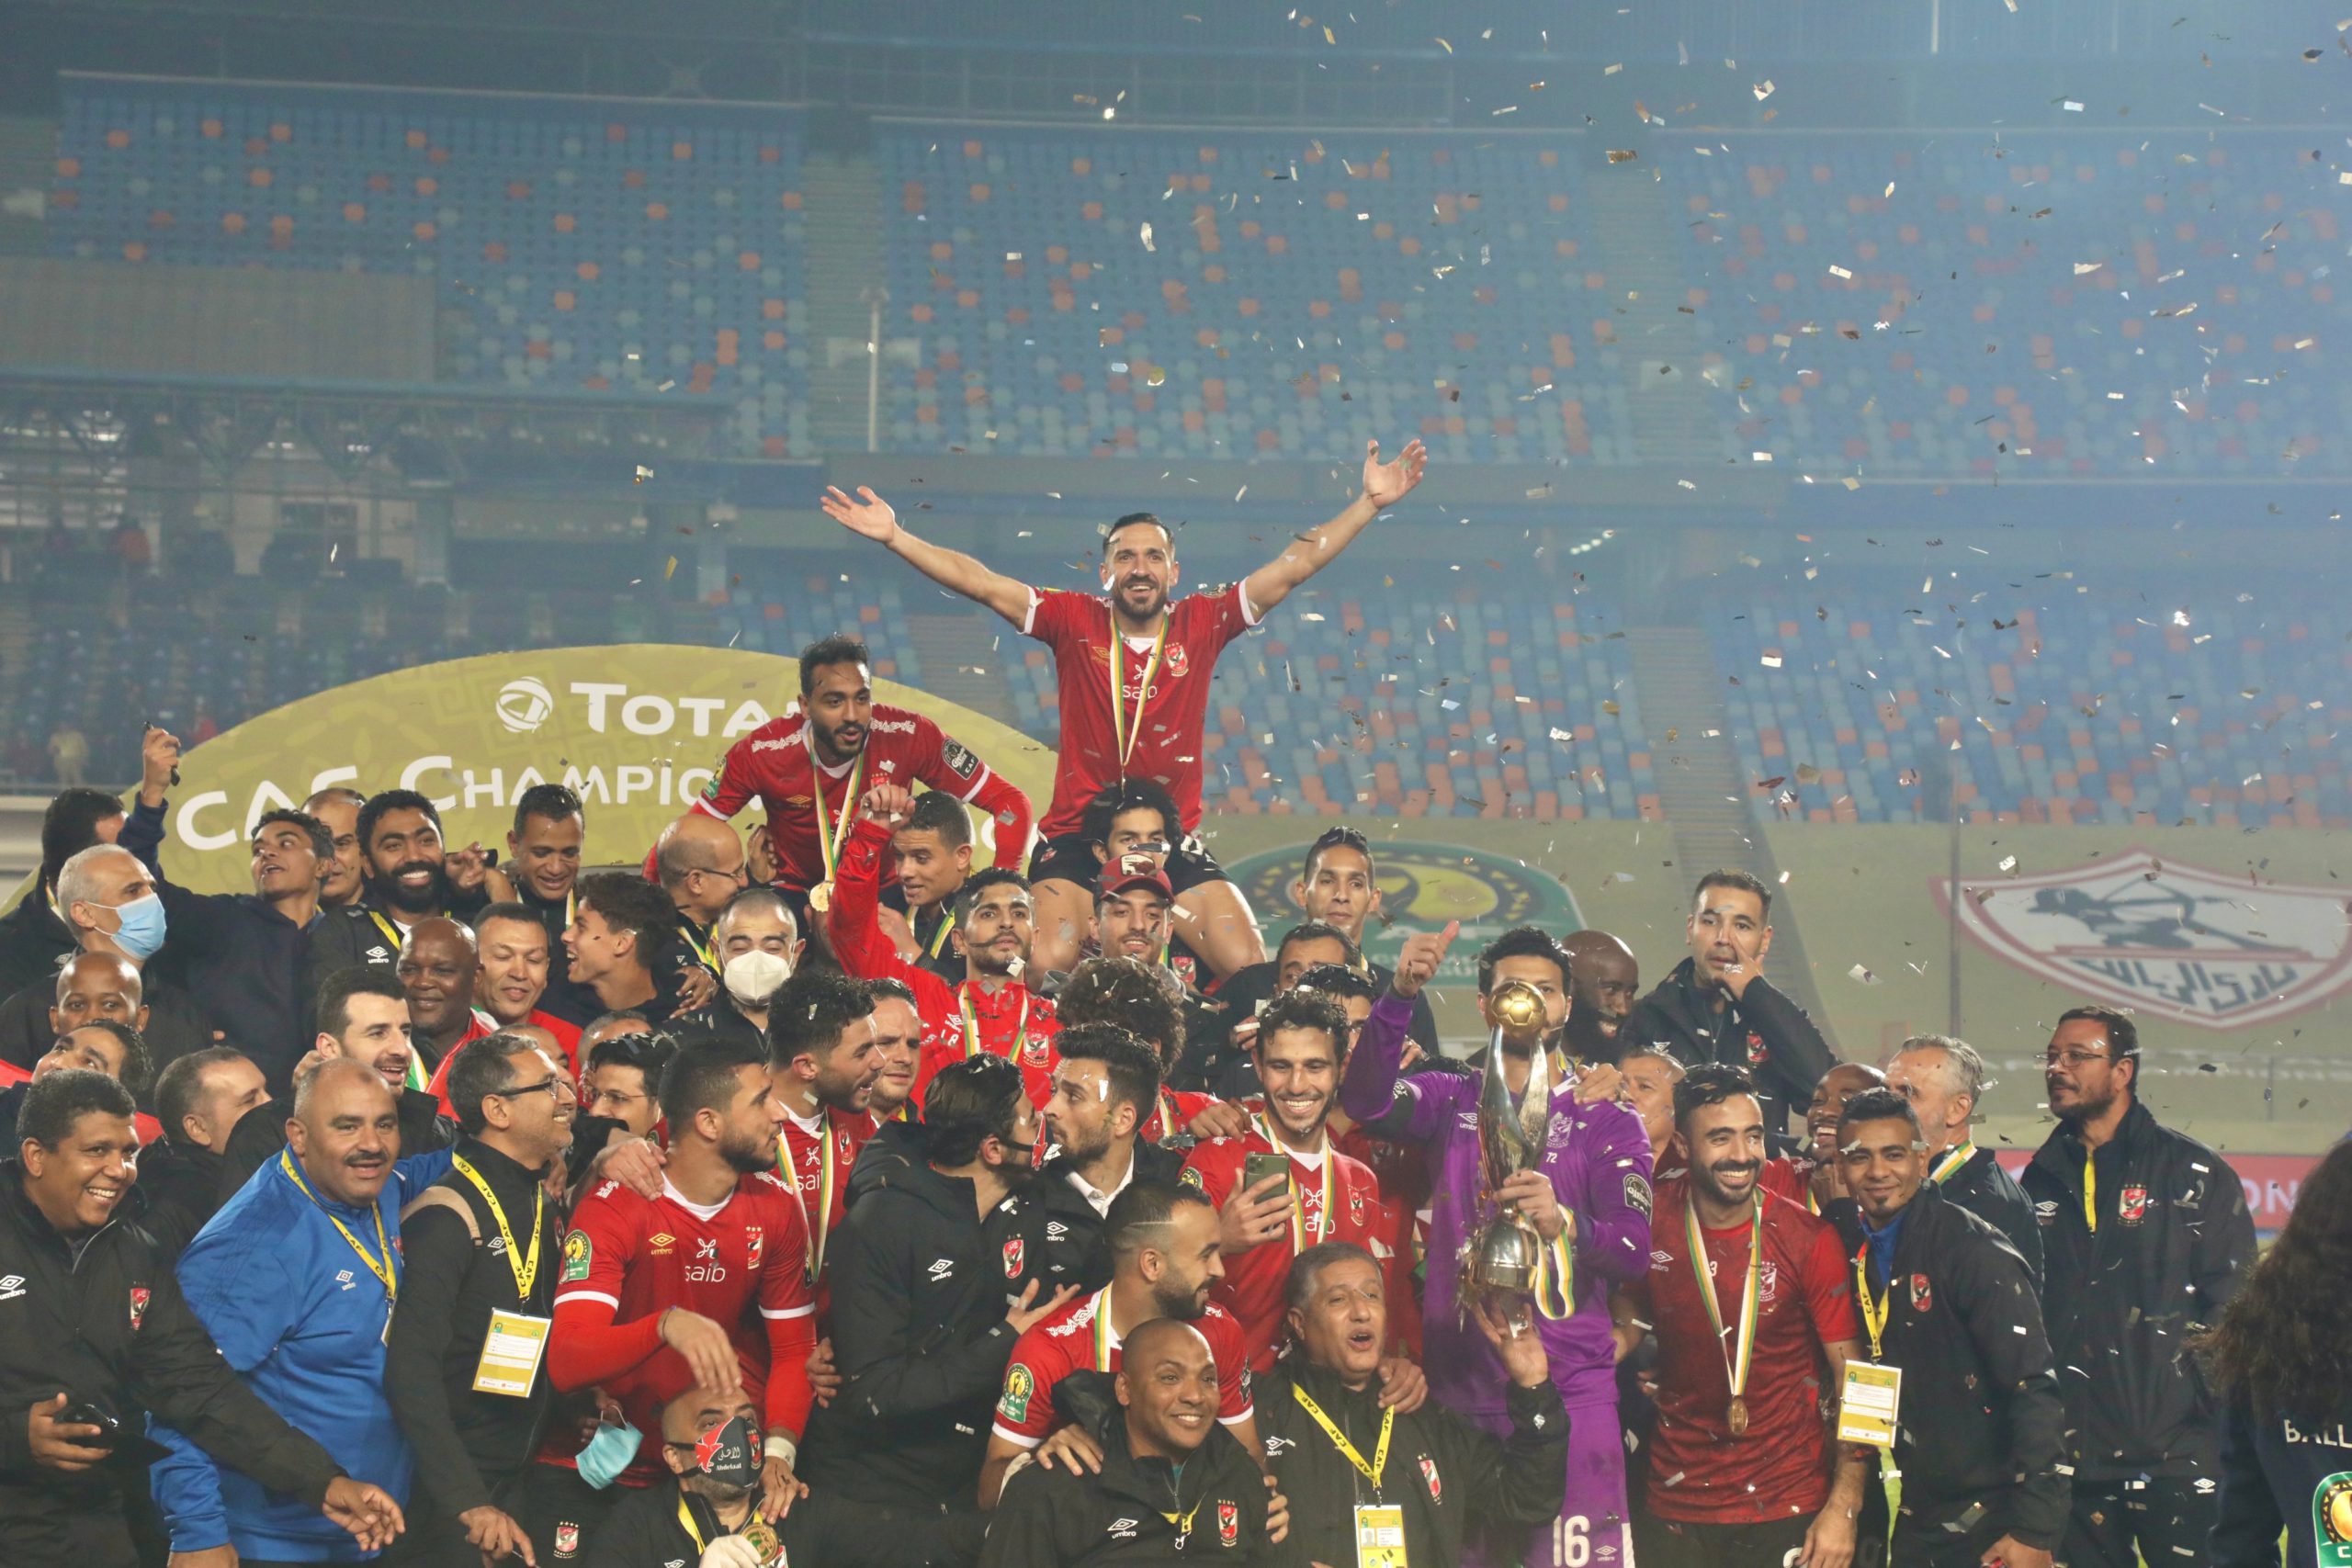 Caf Champions League final: Al Ahly beat Zamalek to win trophy